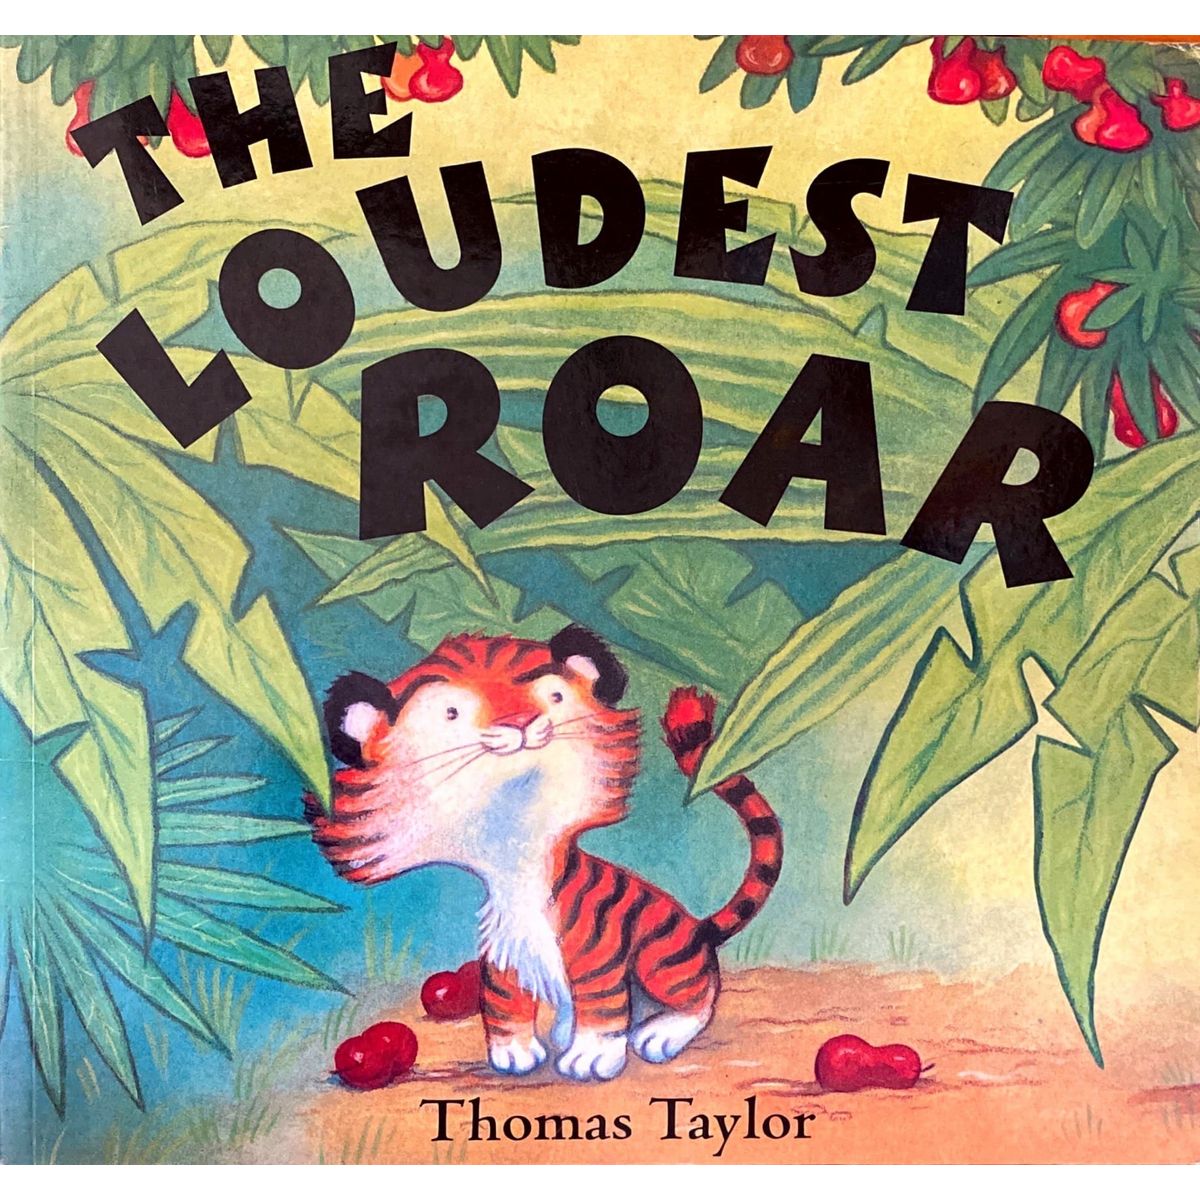 ISBN: 9780192719874 / 0192719874 - The Loudest Roar by Thomas Taylor [2005]